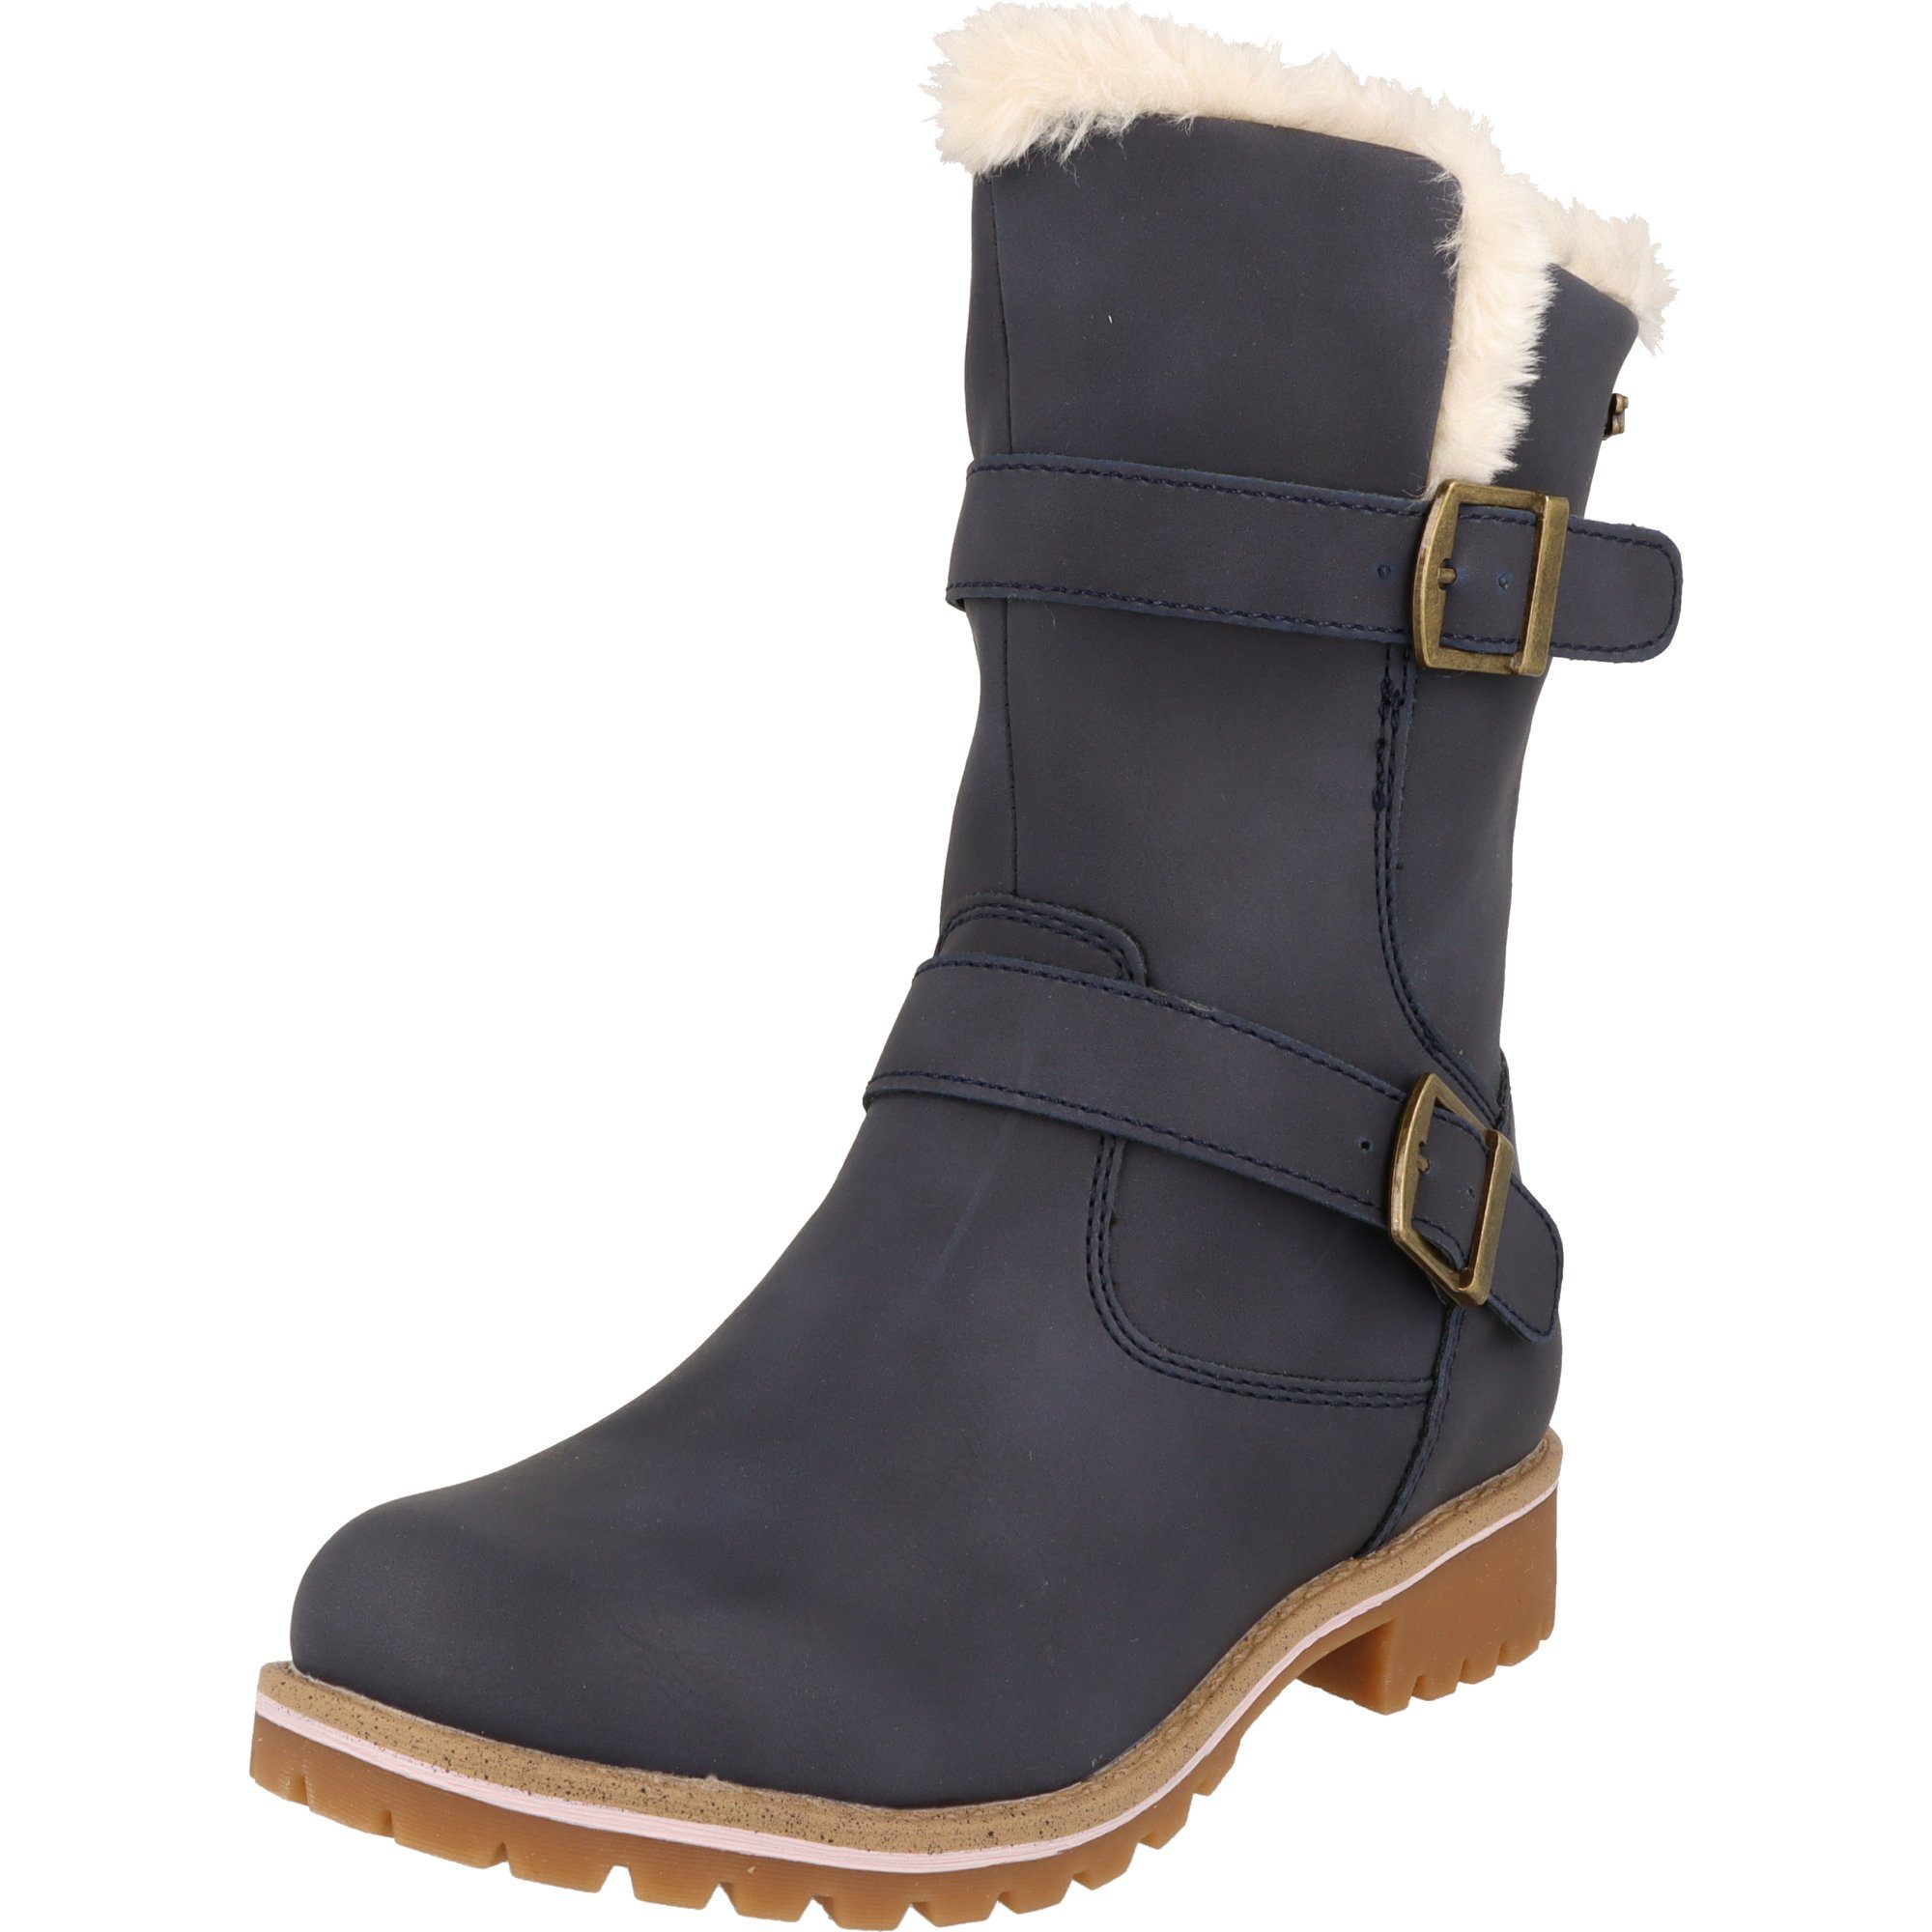 Indigo Mädchen Schuhe Tex warme Winter Stiefel gefüttert 454-143 Reißver. Winterstiefel